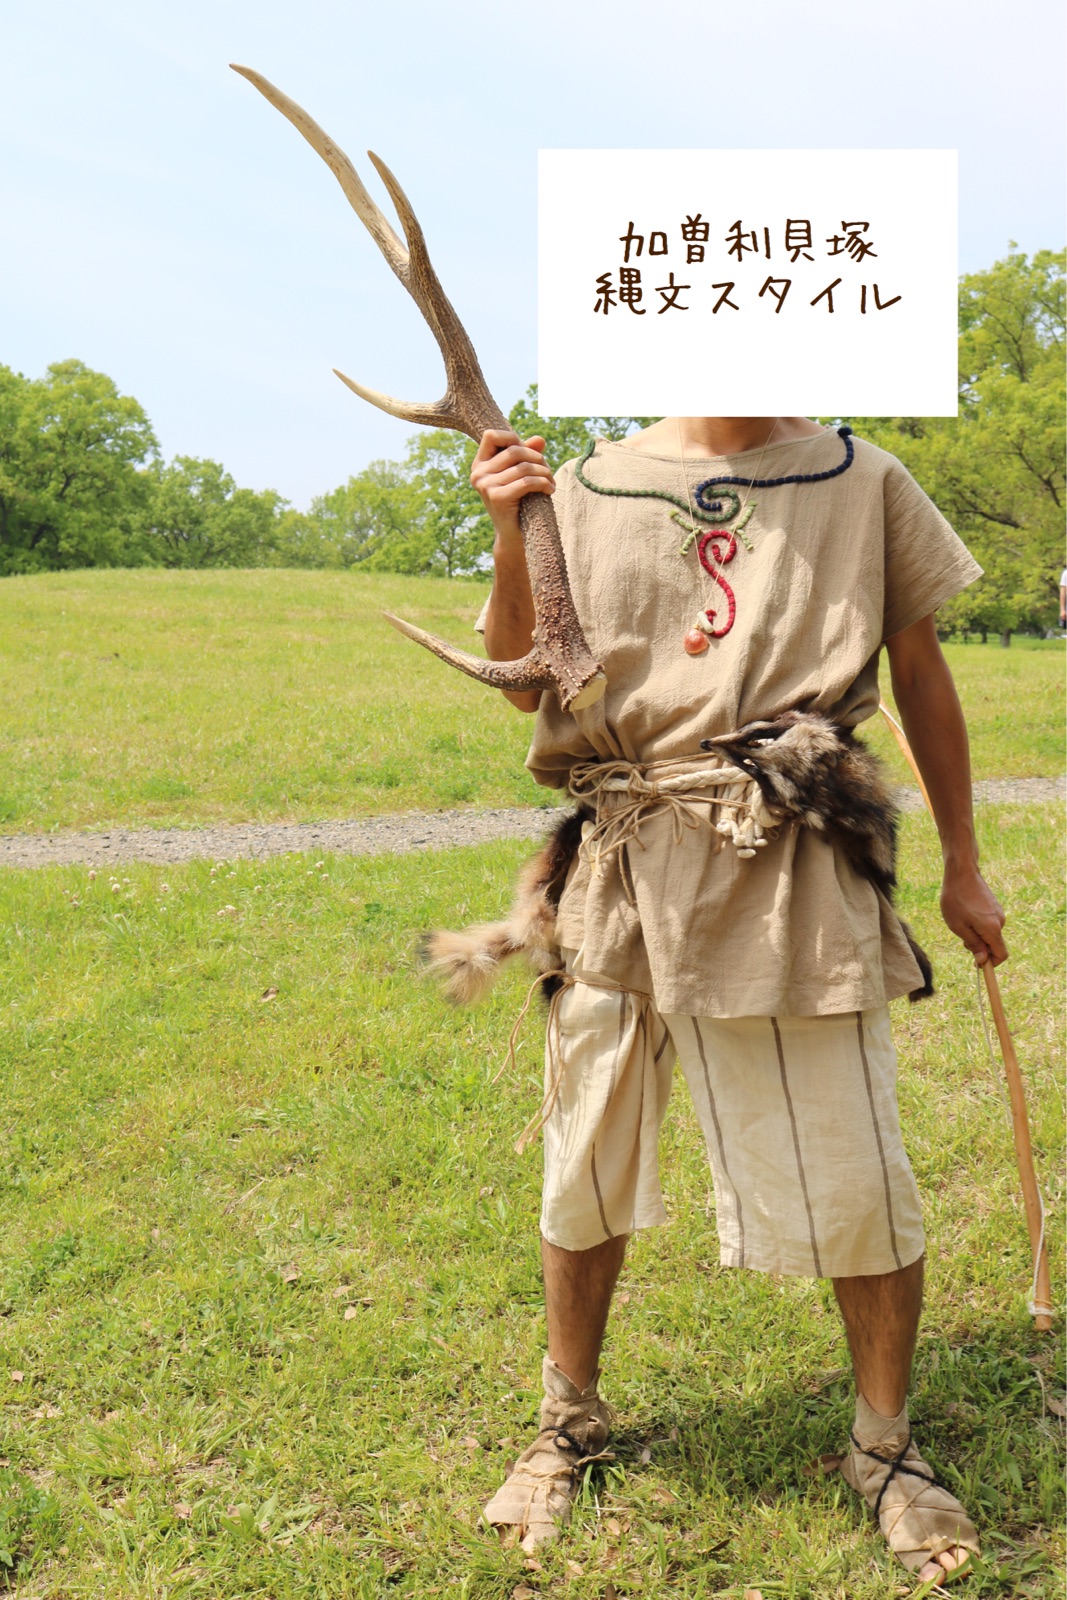 狩りに行く 竹で作る夏の自由工作 ノープラン生活